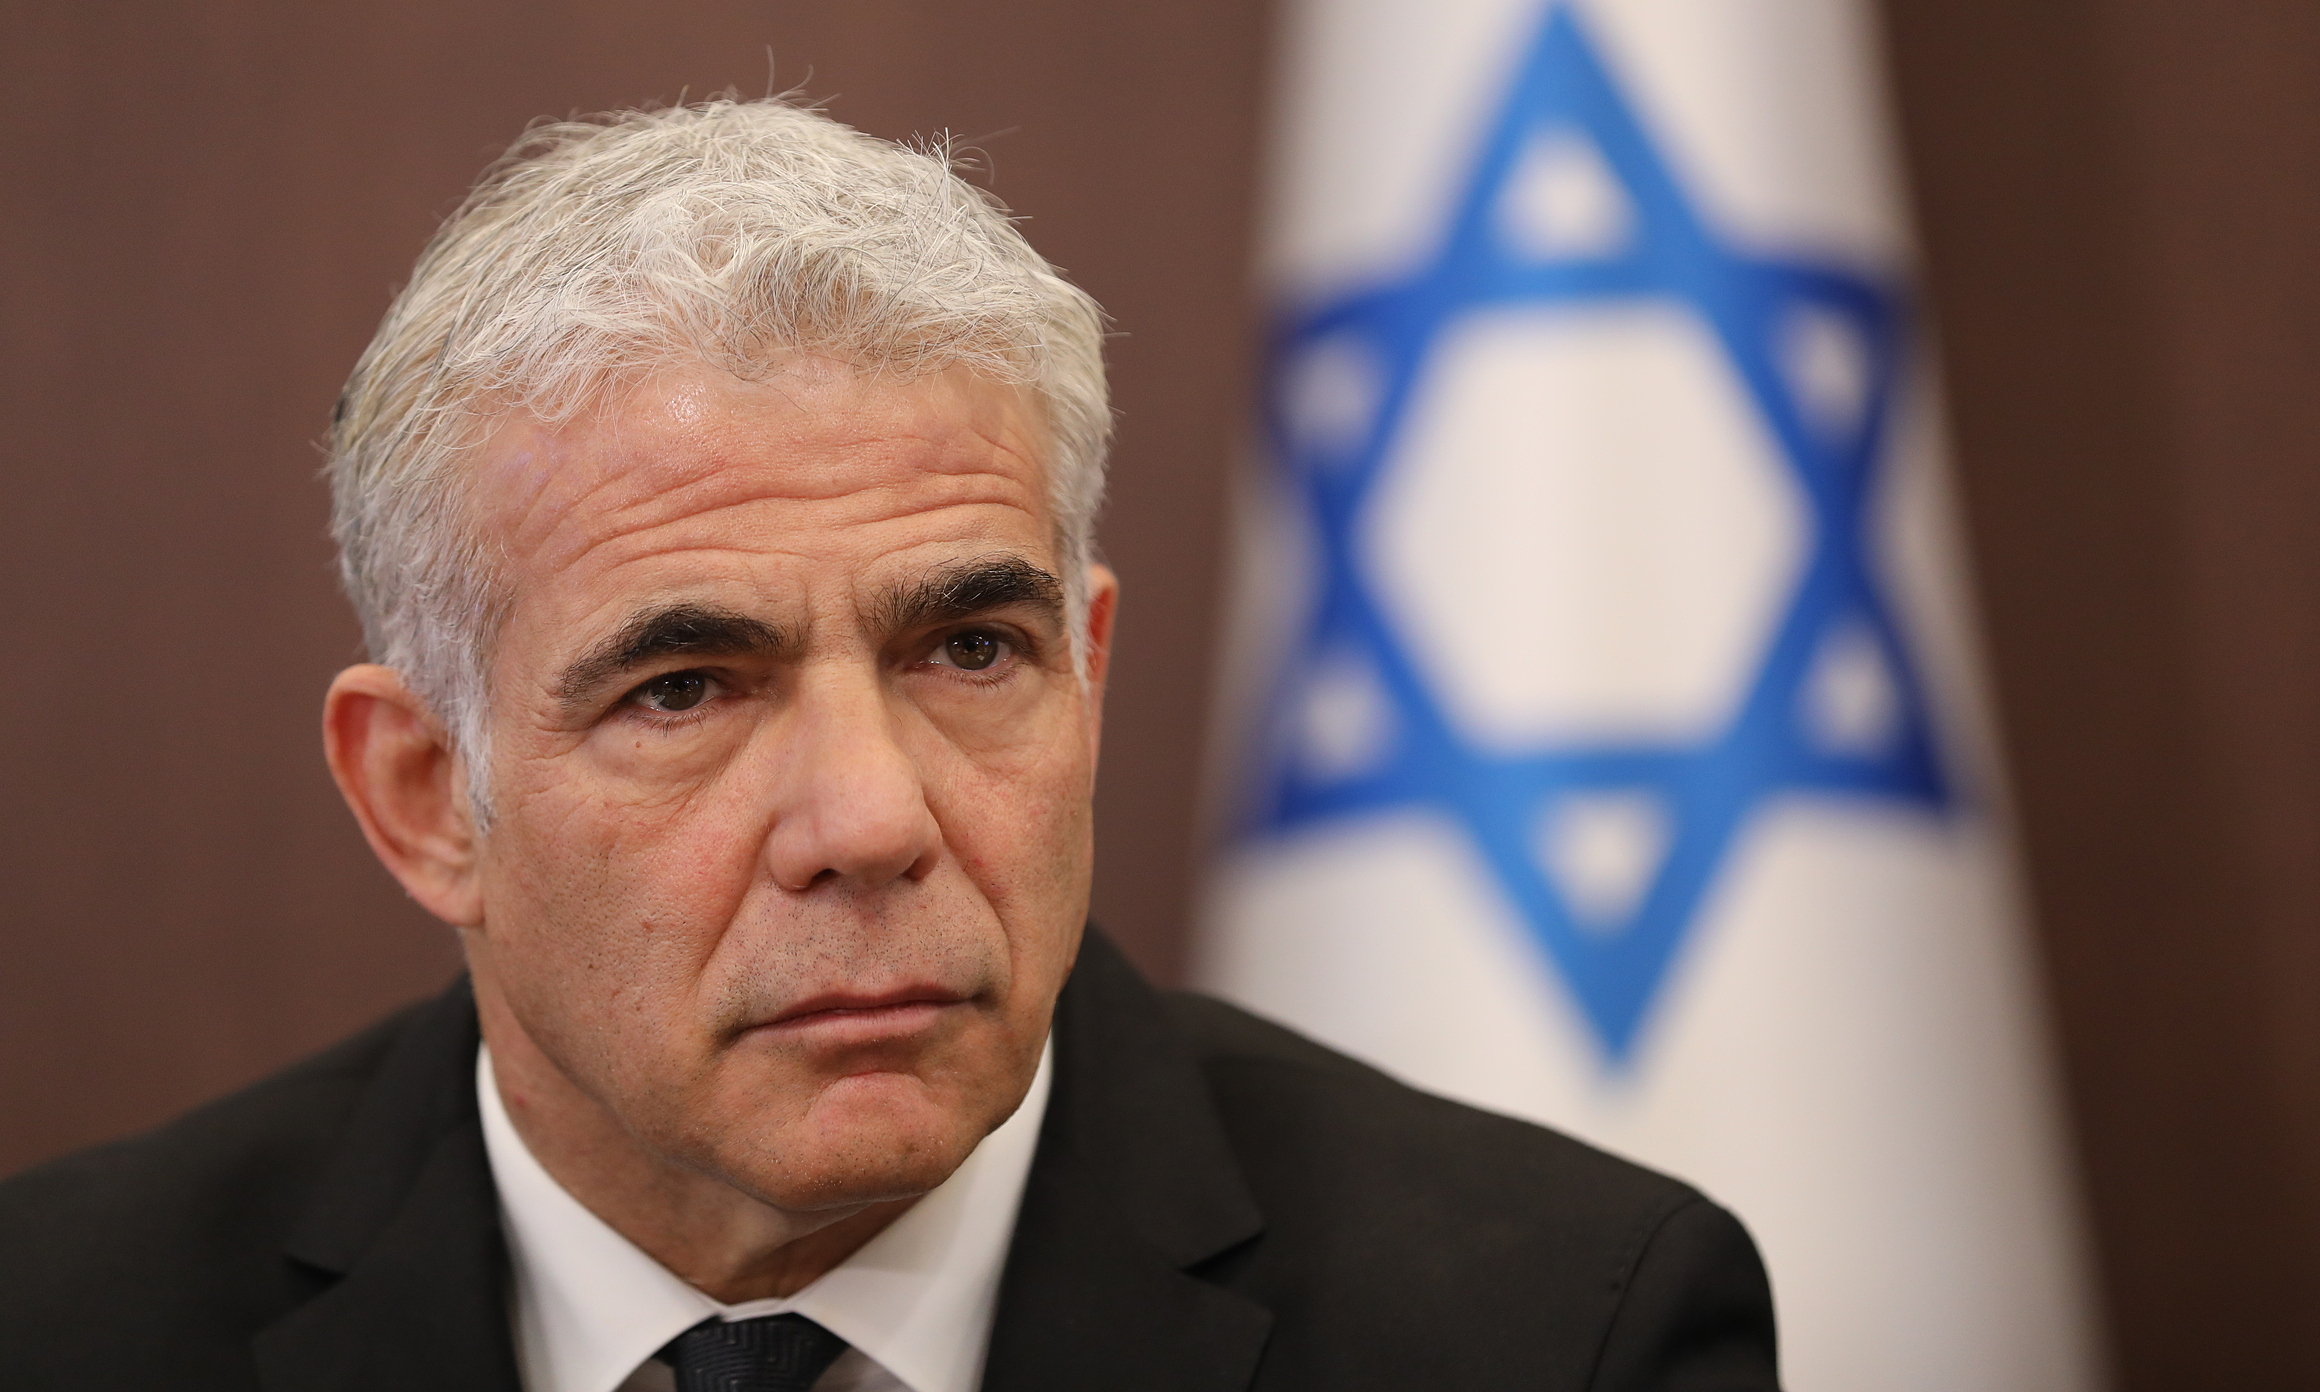 Ngoại trưởng Lapid trong một cuộc họp ở Jerusalem hồi giữa tháng 5. Ảnh: AFP.